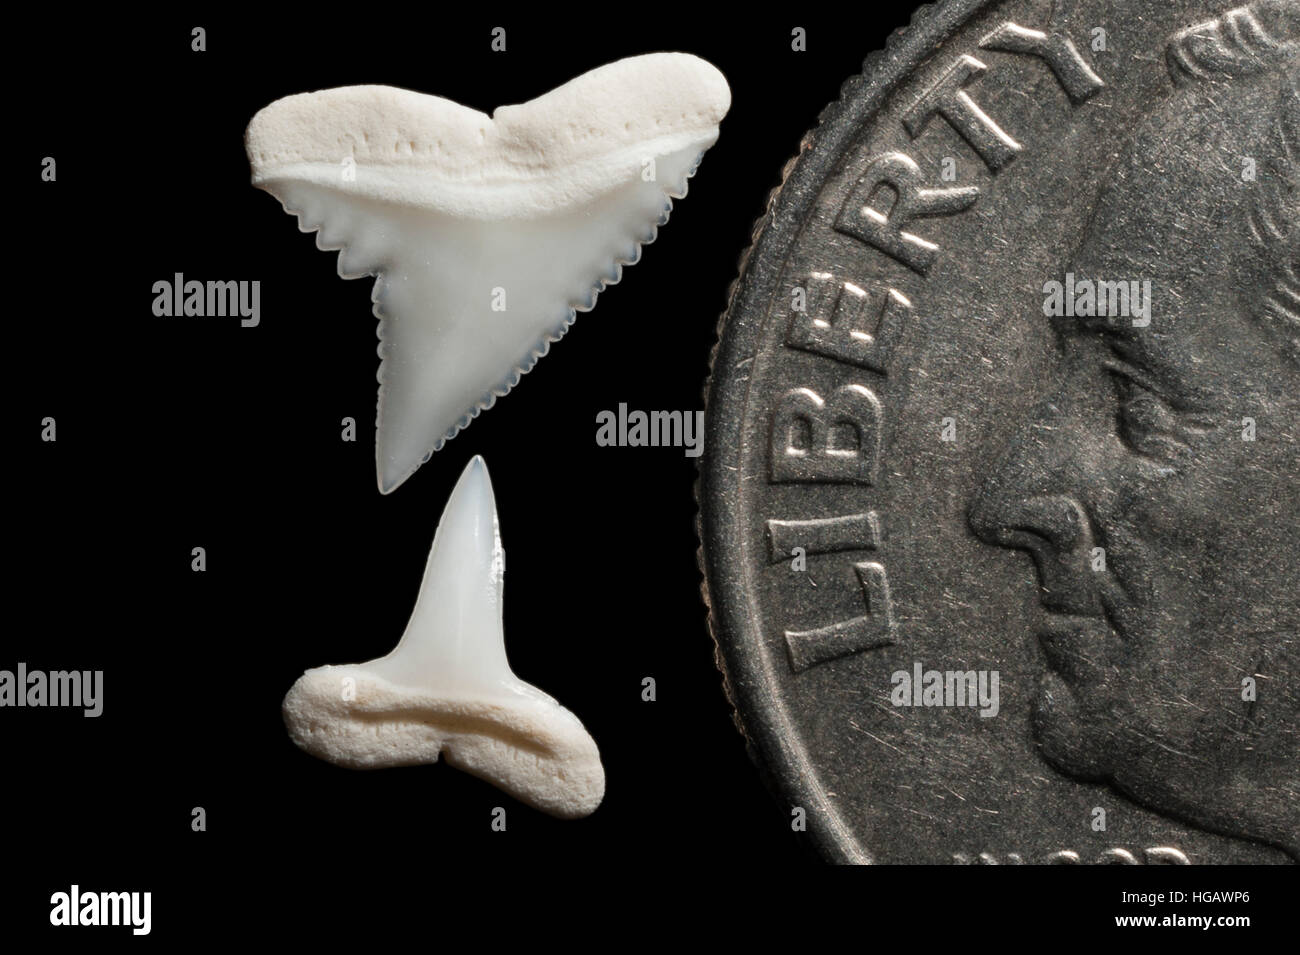 Supérieure et inférieure (dents) de requin soyeux, Carcharhinus falciformis, à côté de U.S. quart (25 cents) pour la comparaison de taille Banque D'Images